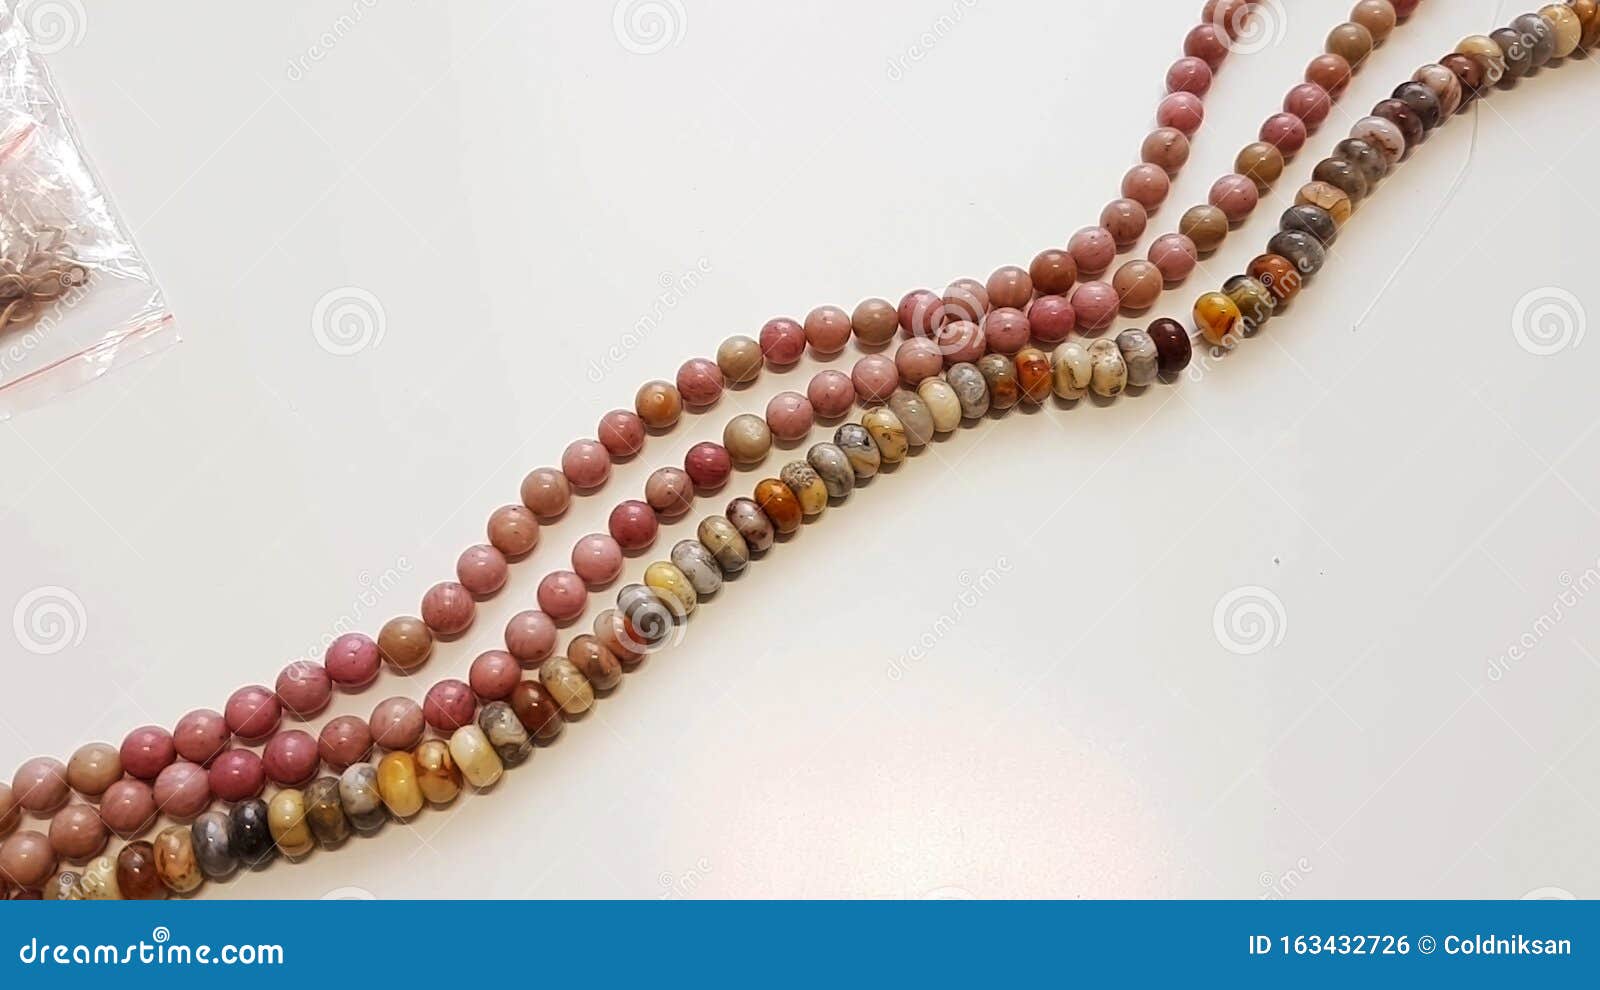 Perlas largas con joyas foto de archivo. Imagen de 163432726